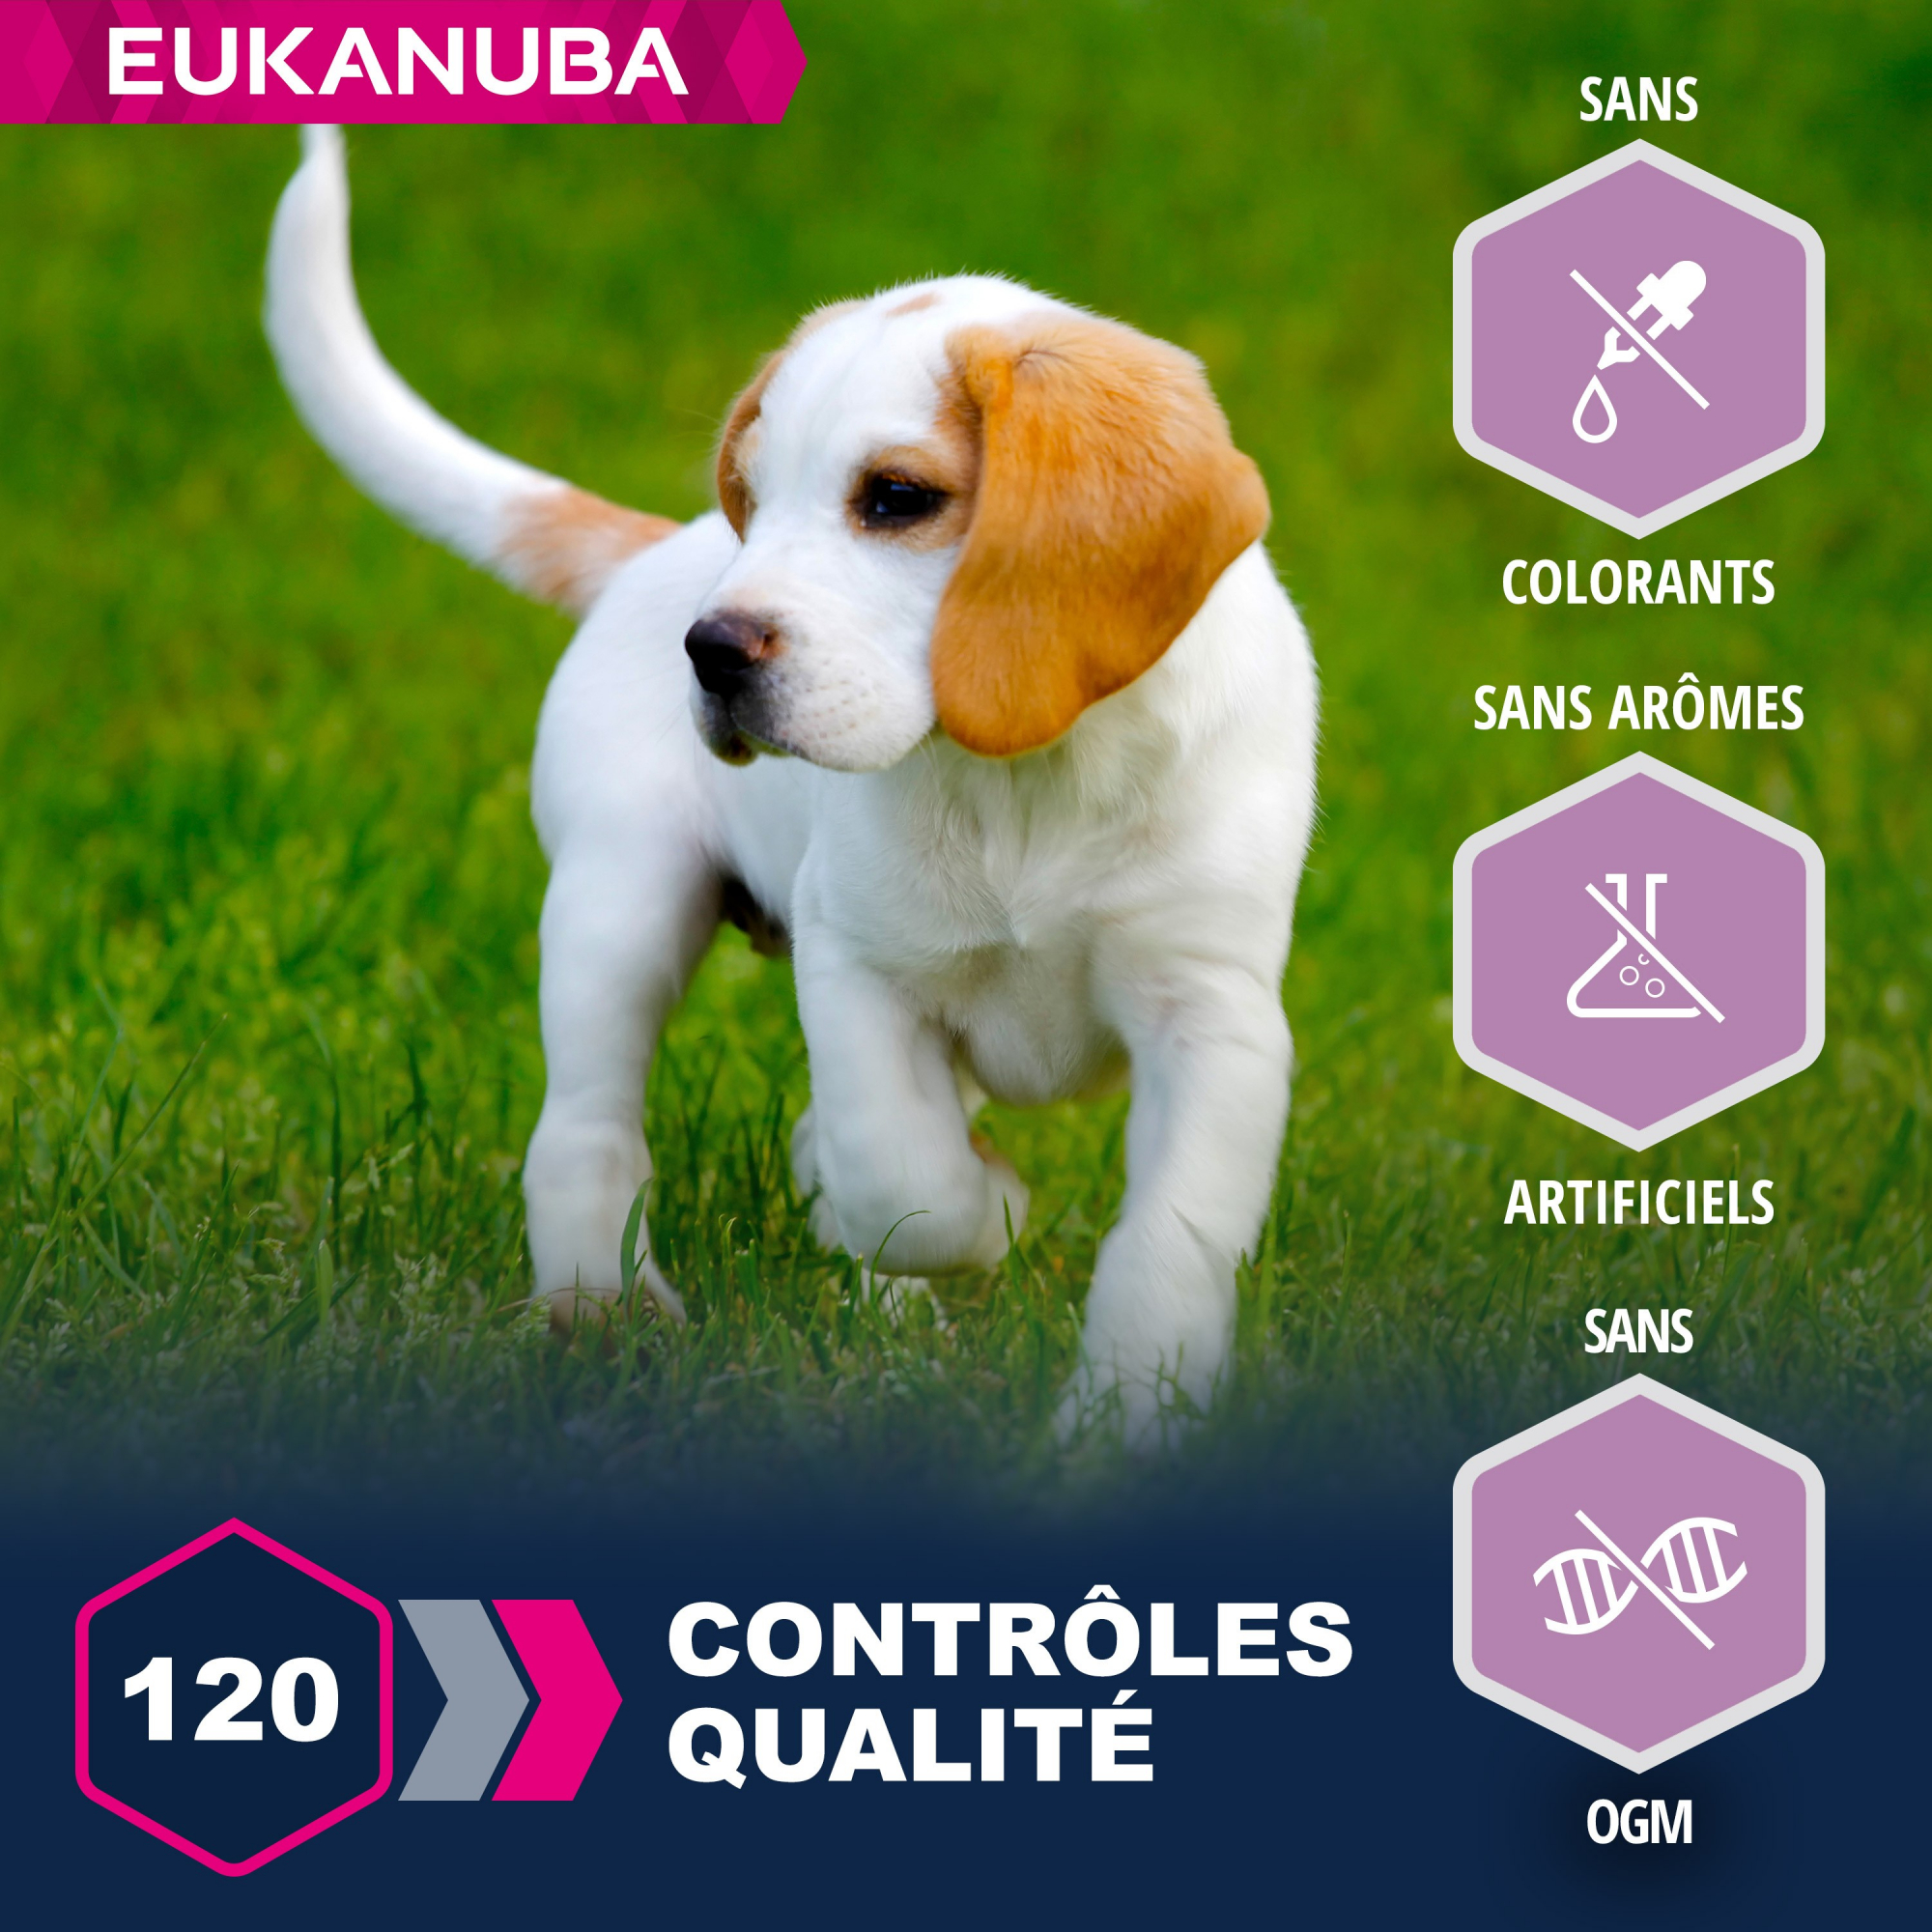 Eukanuba Puppy Small & Medium Breed agneau et riz pour chiot de petites et moyennes races